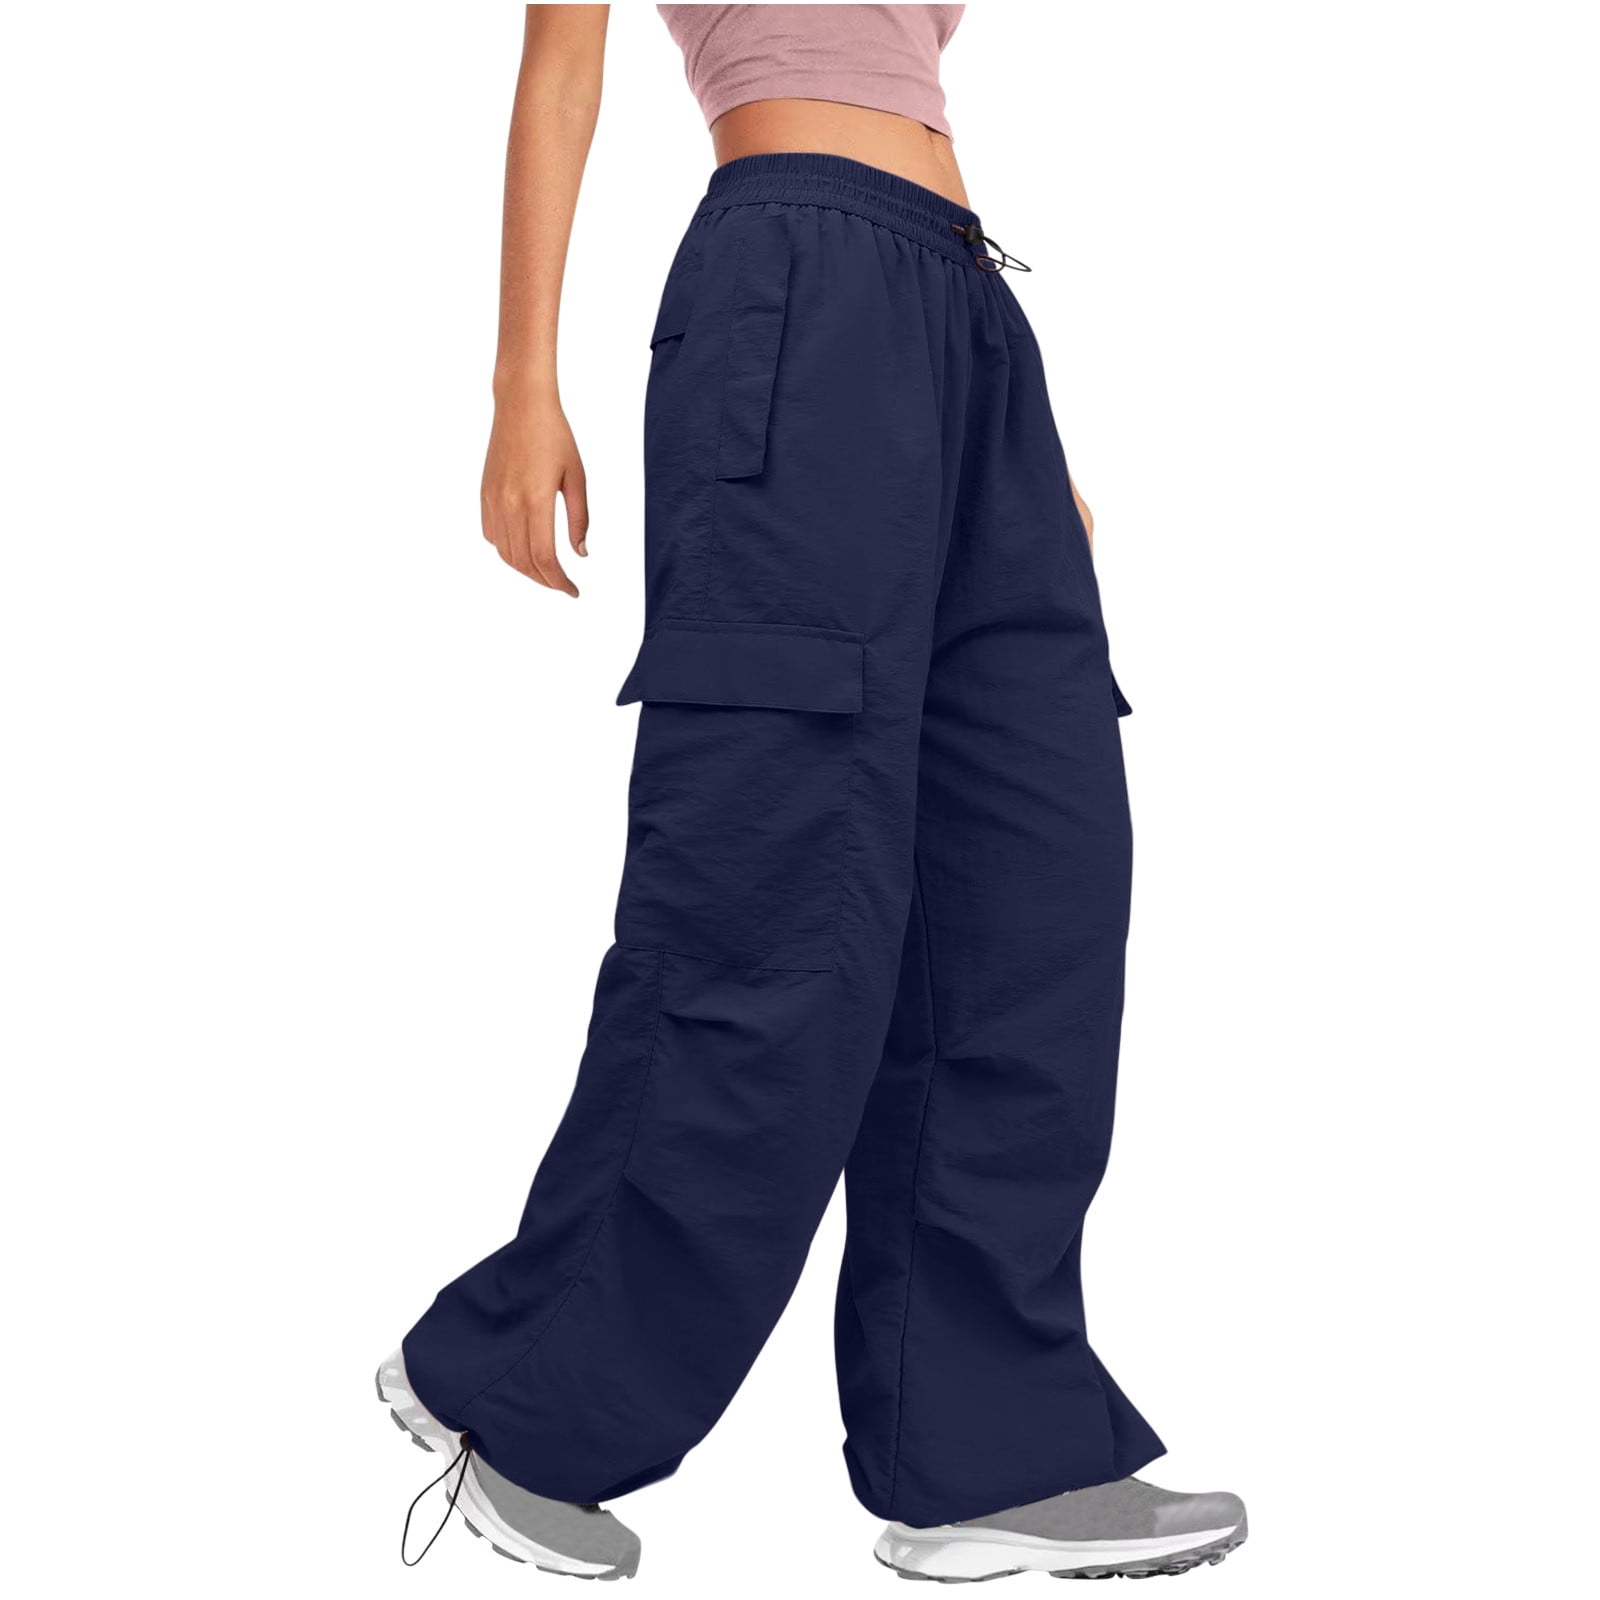 Judy Blue Khaki Cargo Pants – Lola Monroe Boutique